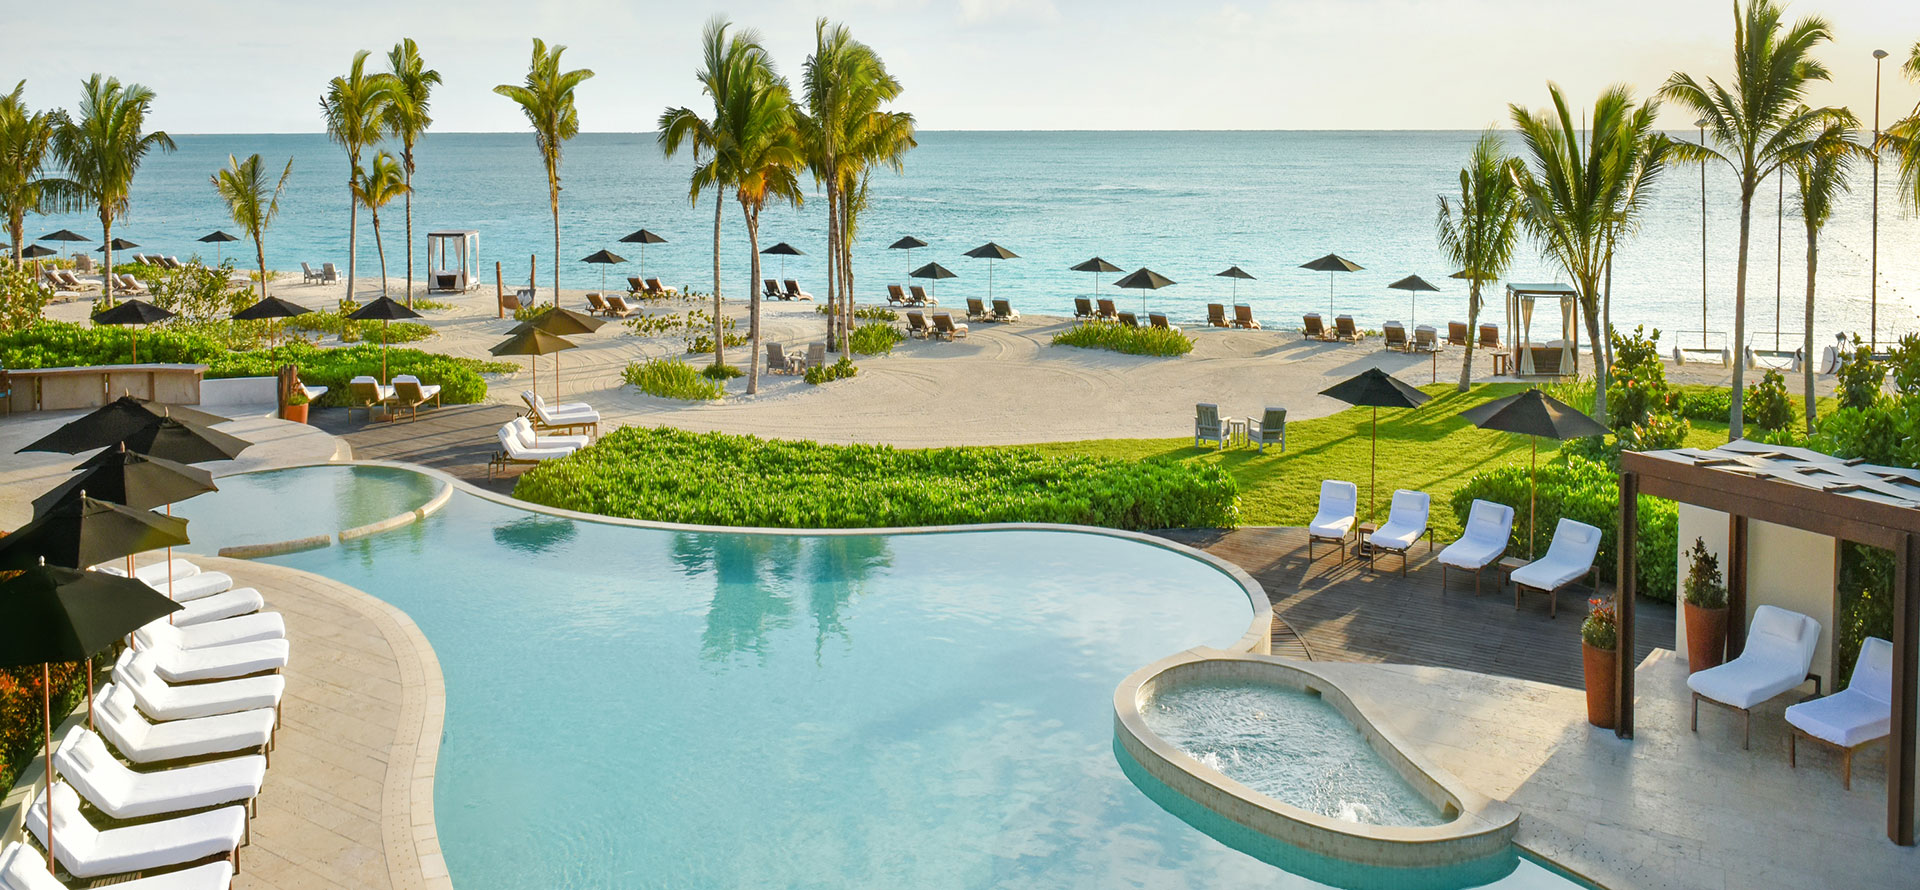 Swimming pool in Cancun.